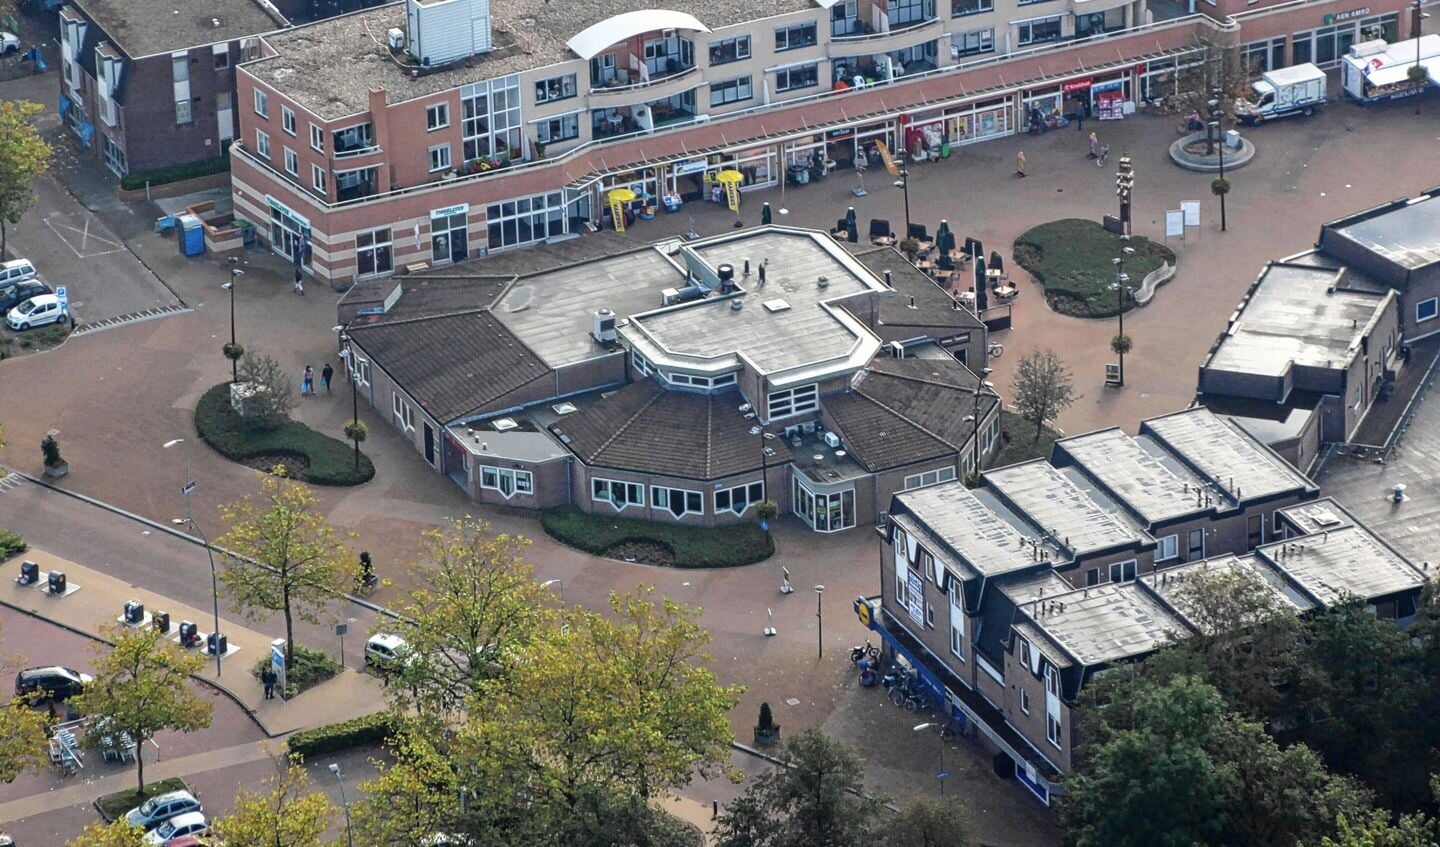 De nieuwbouw van het dorpshuis in Hoevelaken leidt tot vragen bij zowel omwonenden als enkele politieke partijen.